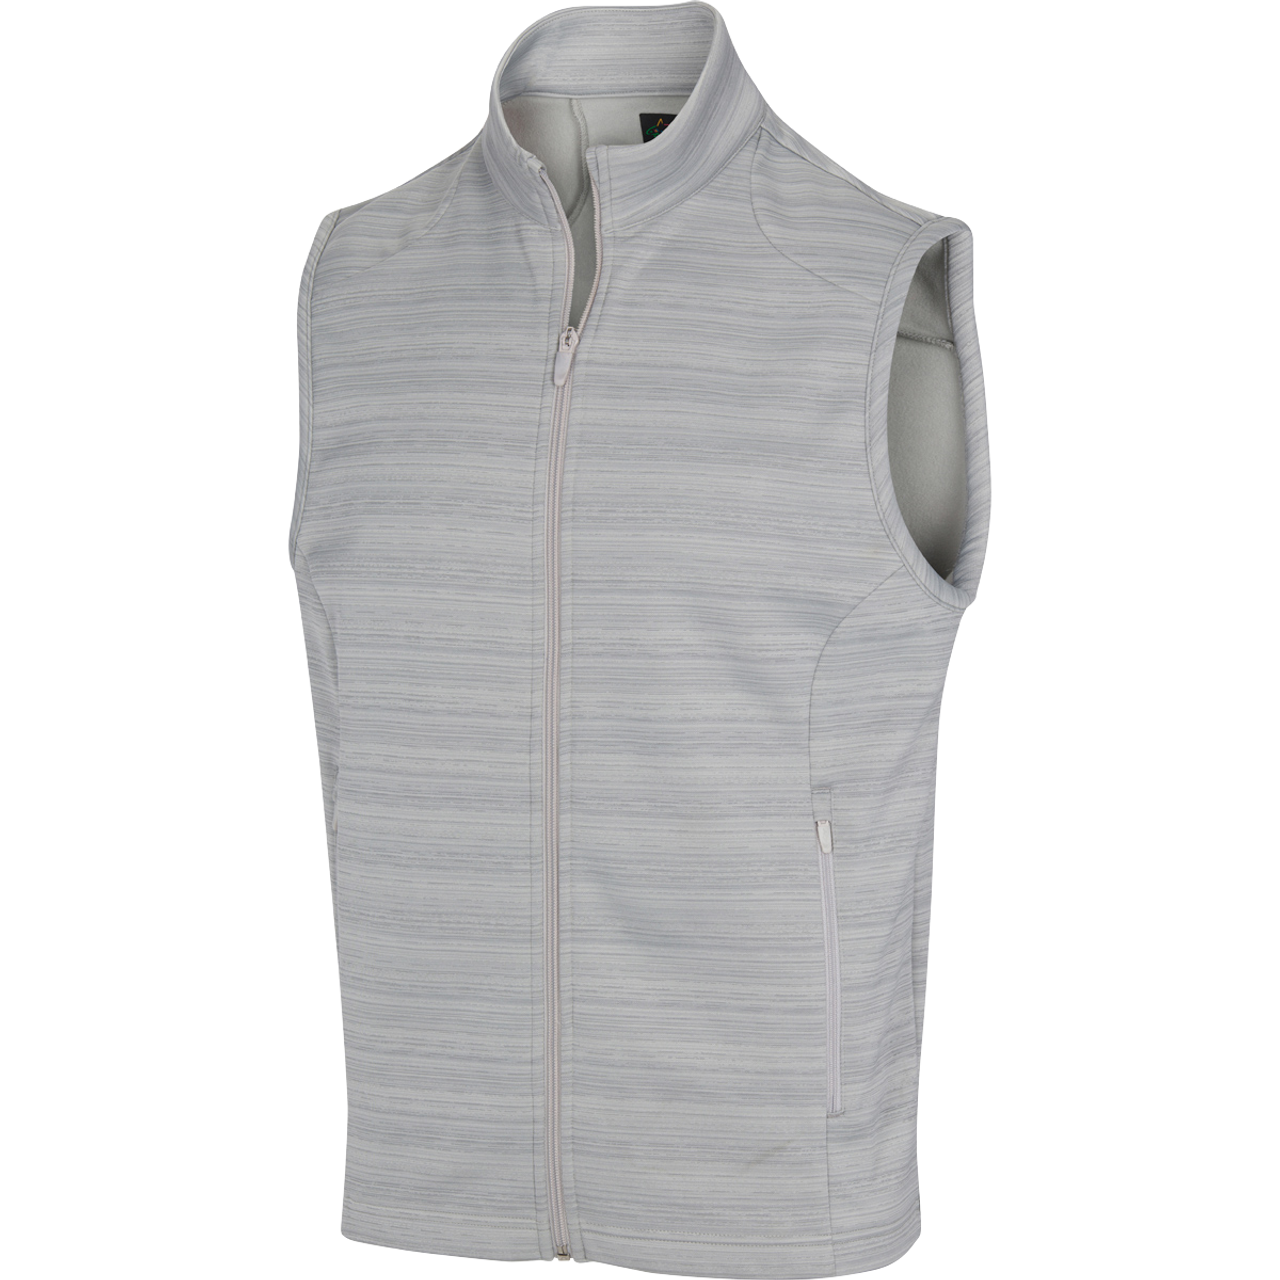 Greg Norman Ace Full Zip Fleece Sleeveless Jacket (US Size)